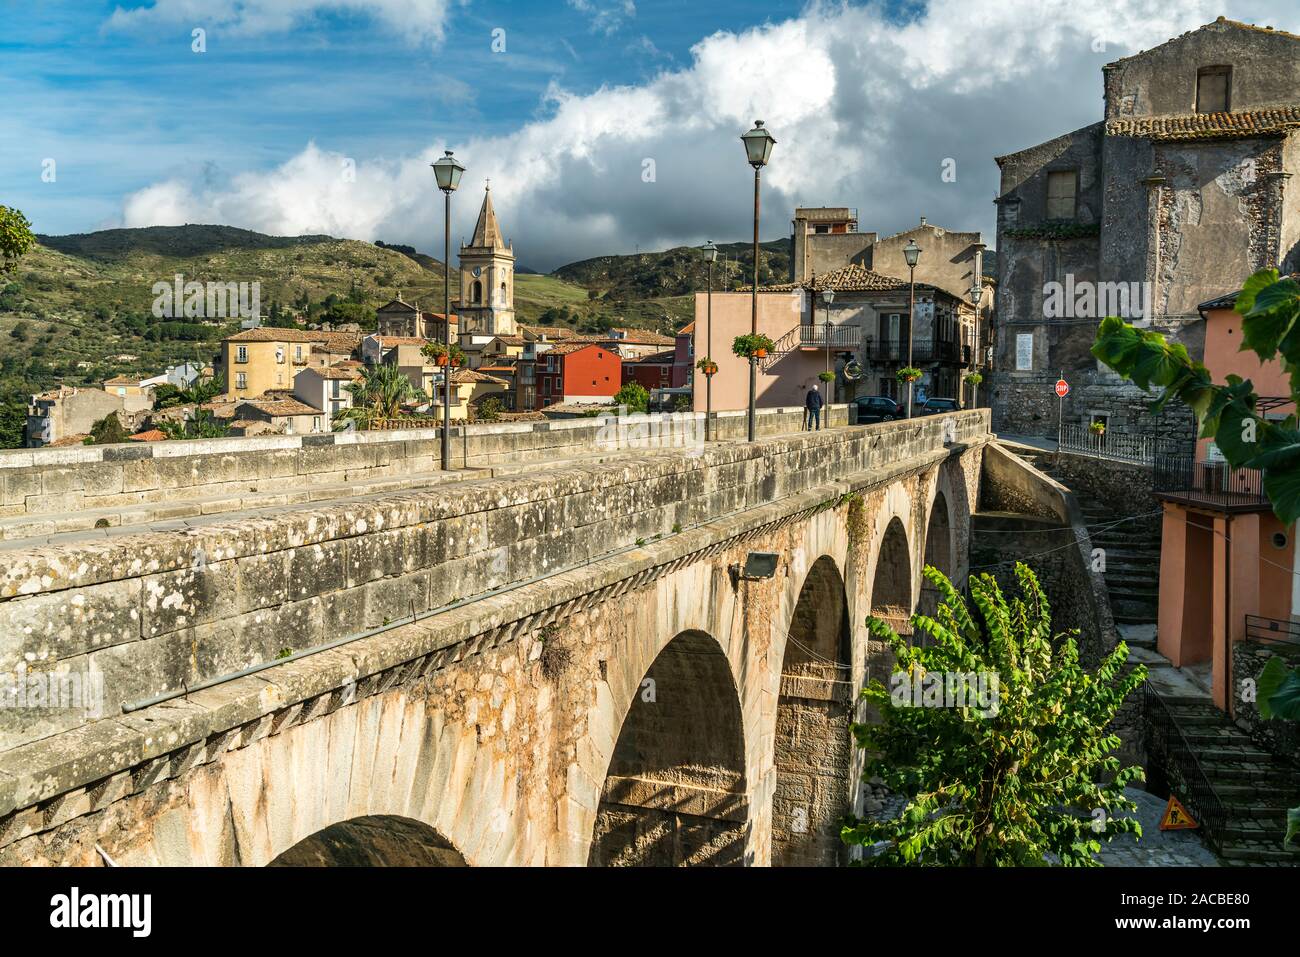 steinerne Brücke im Dorf Novara di Sicilia, Sizilien, Italien, Europa  |  stone bridge in Novara di Sicilia village, Sicily, Italy, Europe Stock Photo